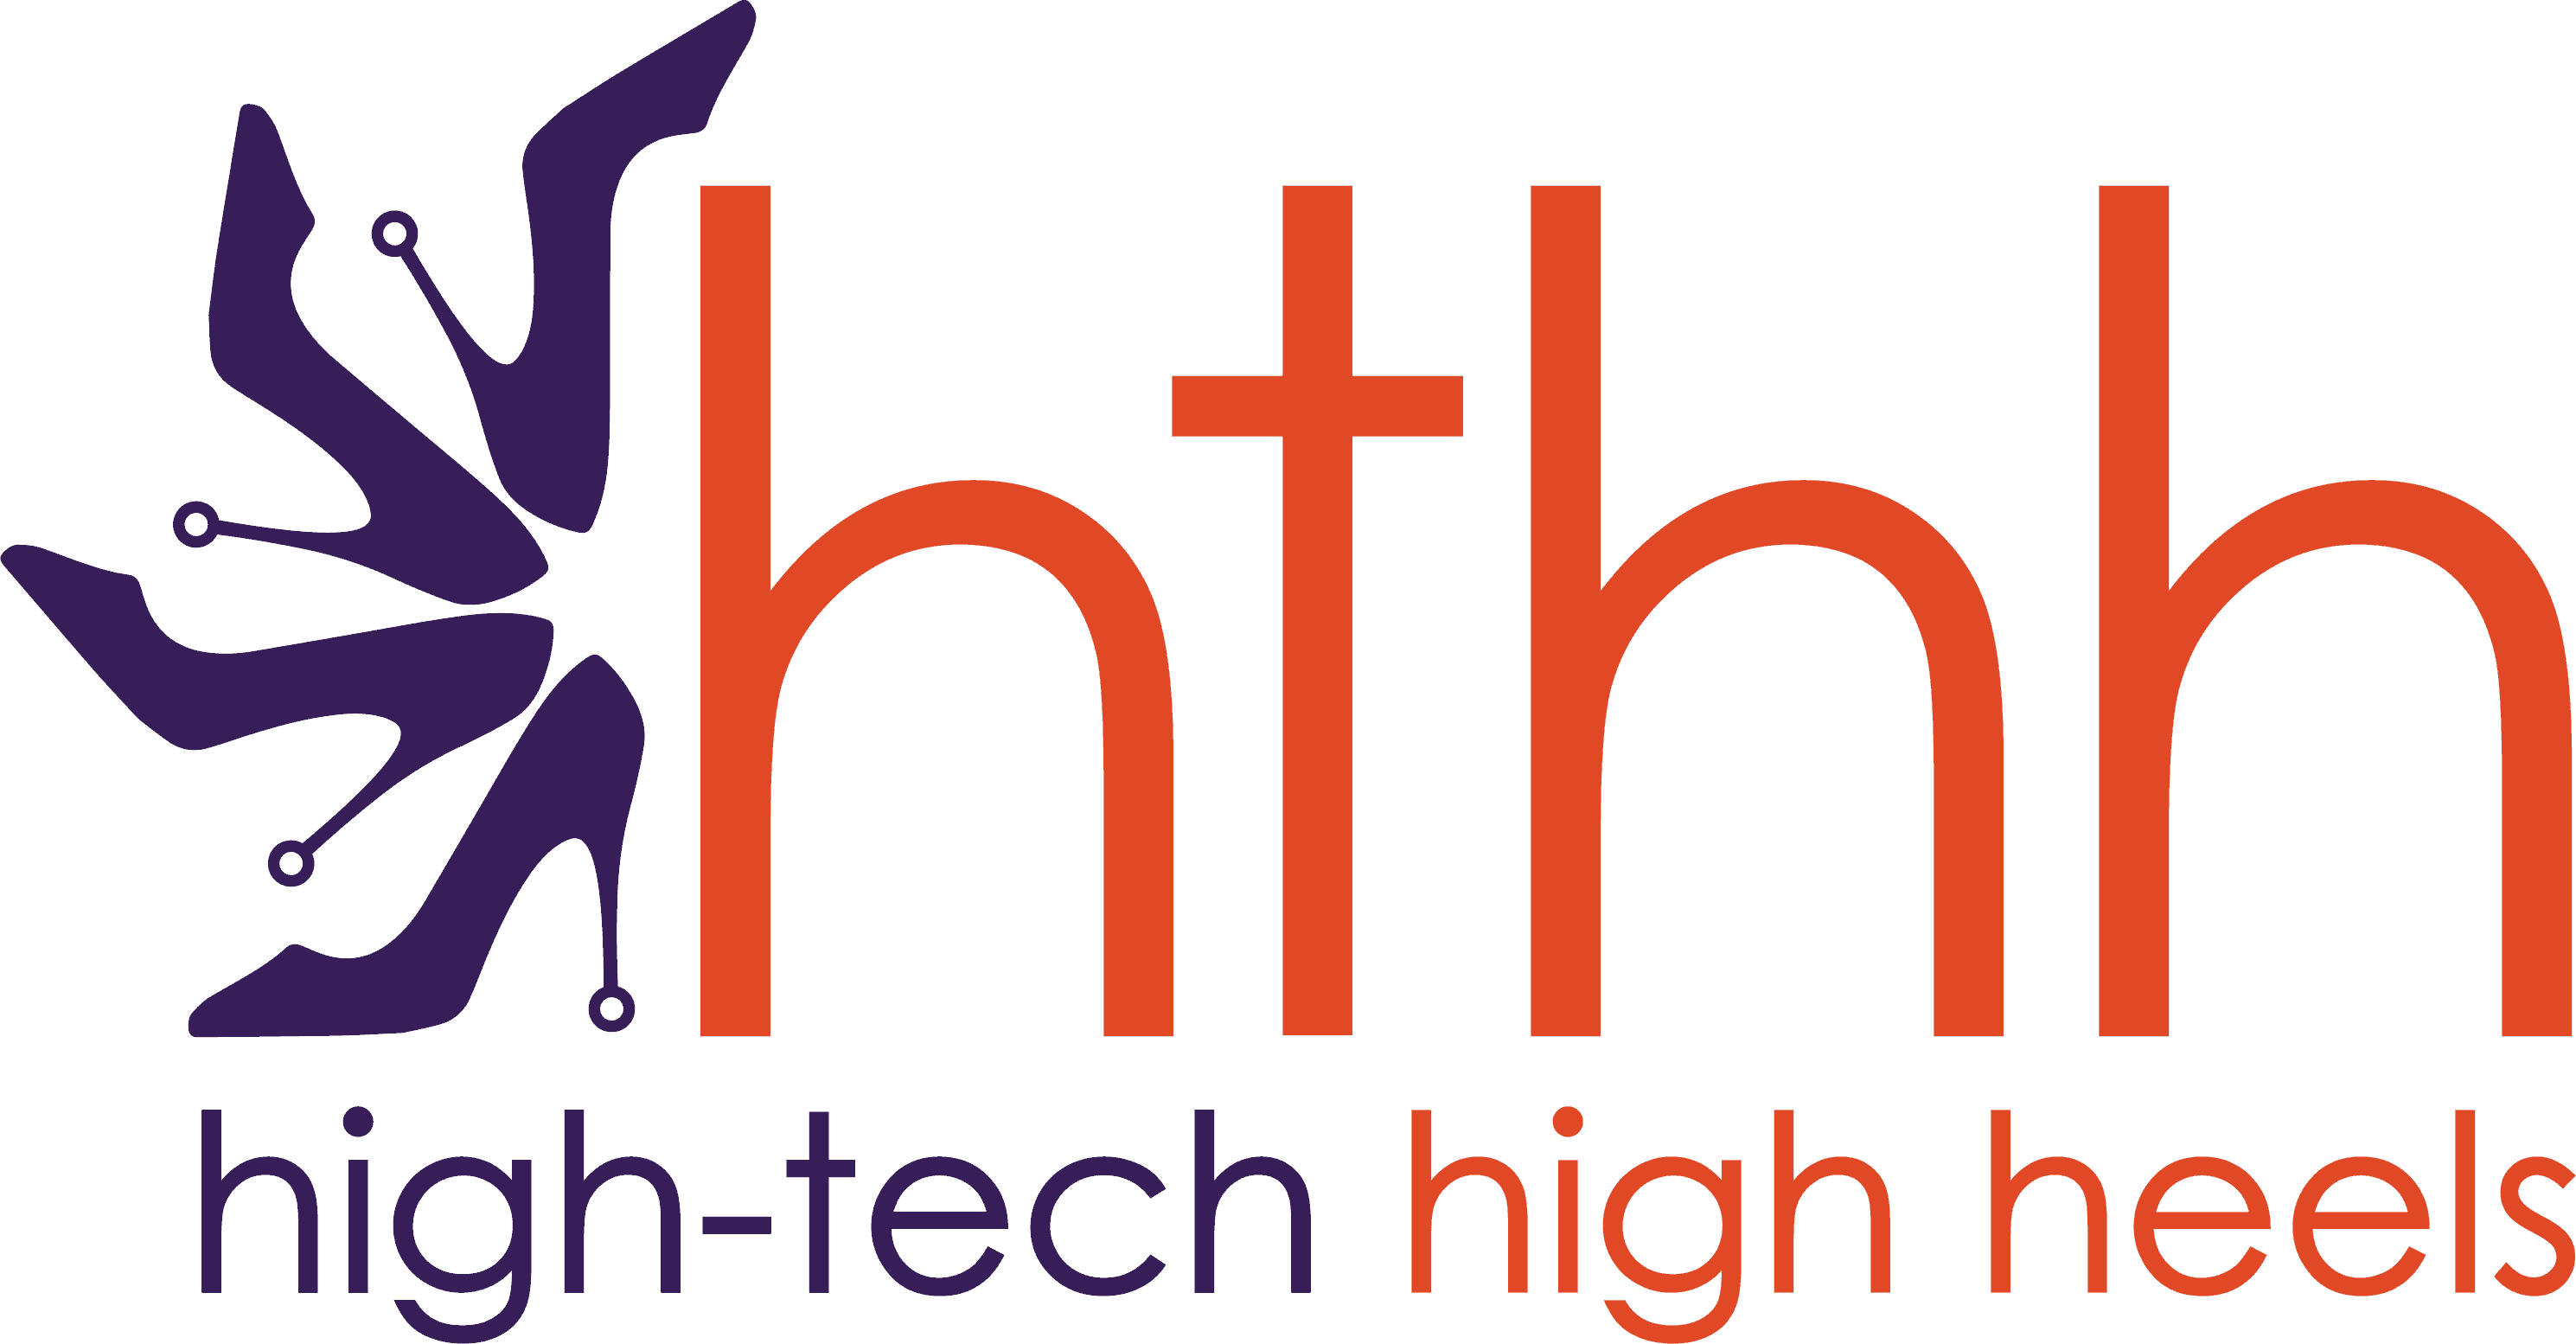 High Tech High Heels